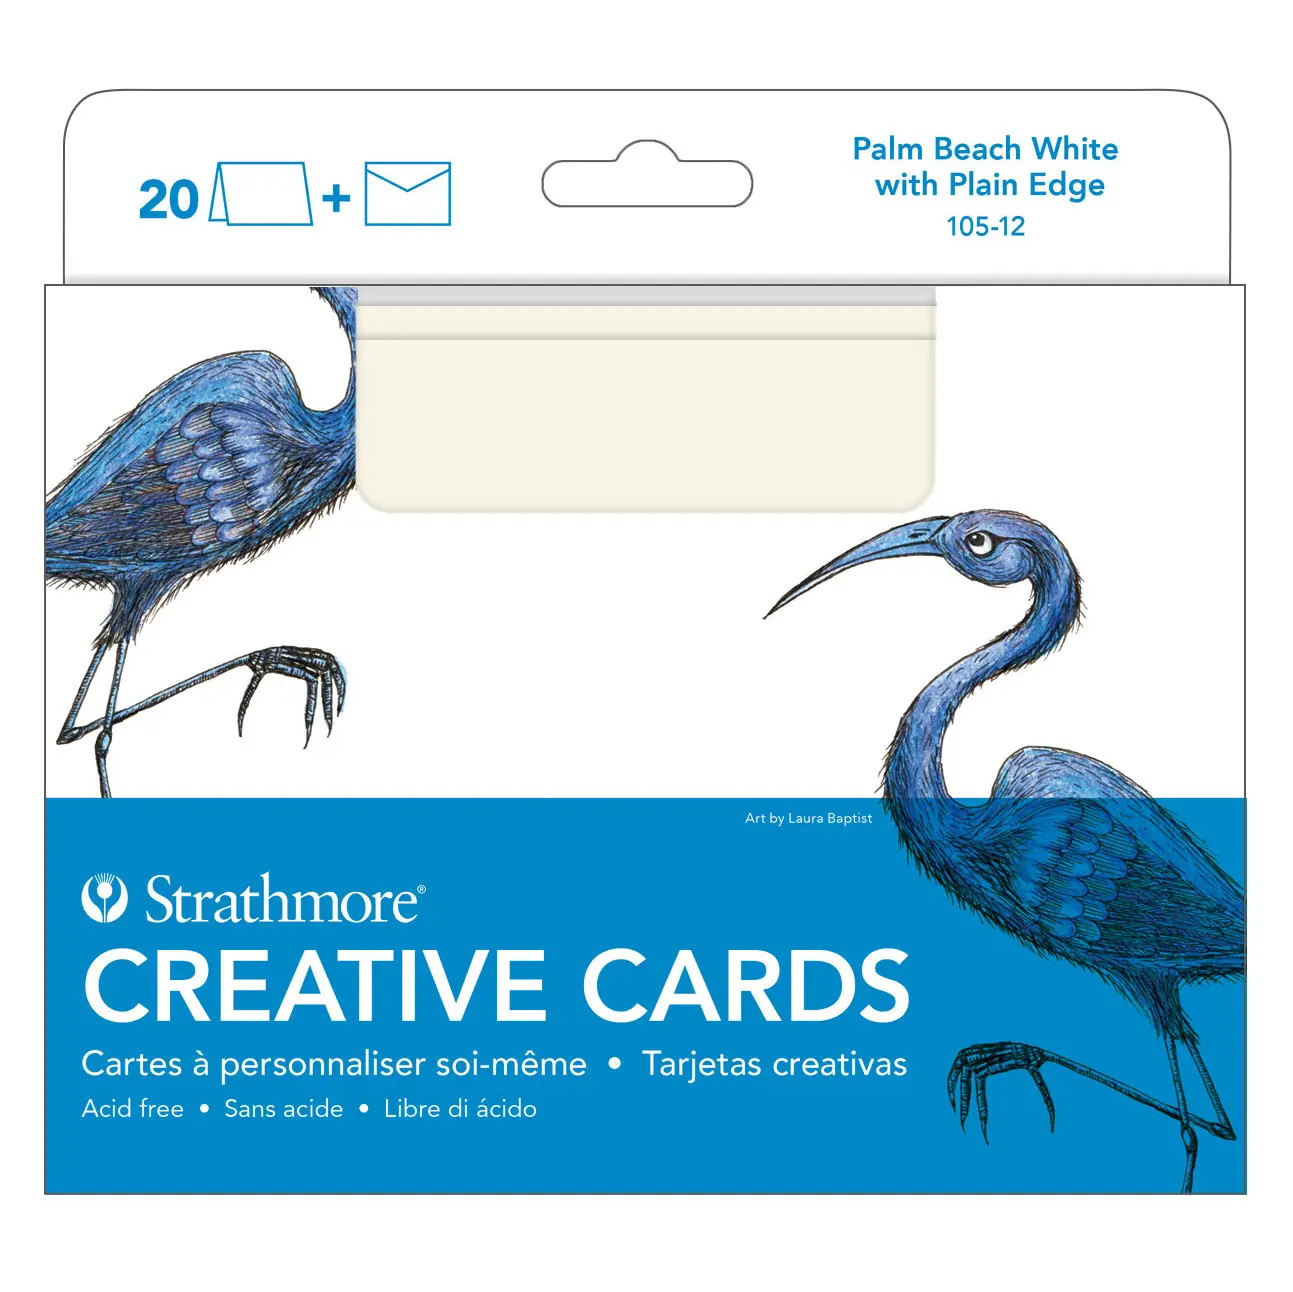 Strathmore Creative Cards Palm Beach White